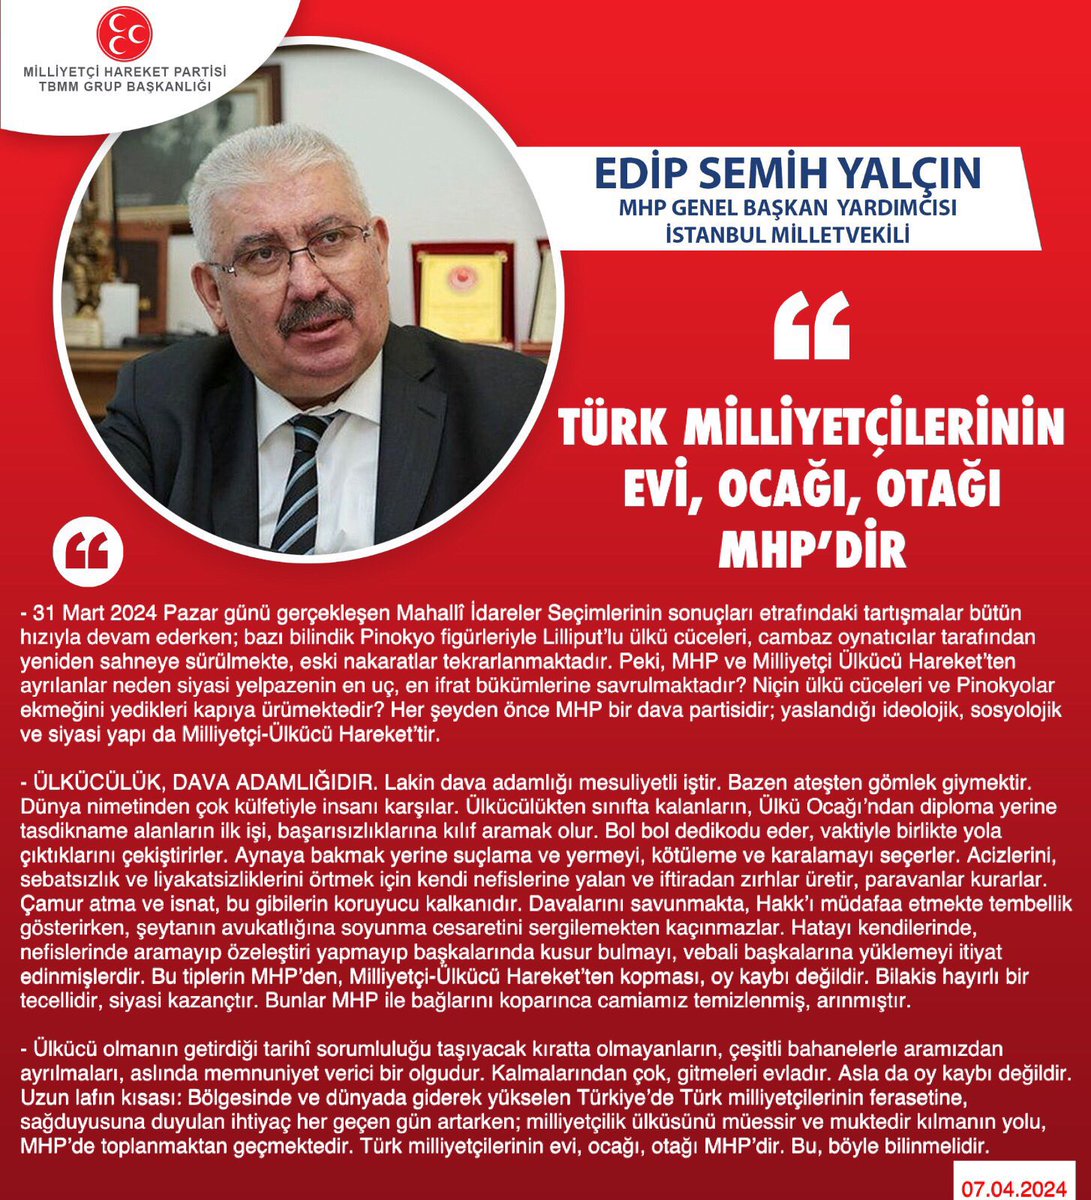 MHP Genel Başkan Yardımcısı ve İstanbul Milletvekilimiz Prof. Dr. E. Semih Yalçın @E_SemihYalcin: Türk milliyetçilerinin evi, ocağı, otağı MHP’dir mhphaber.com/?p=10329